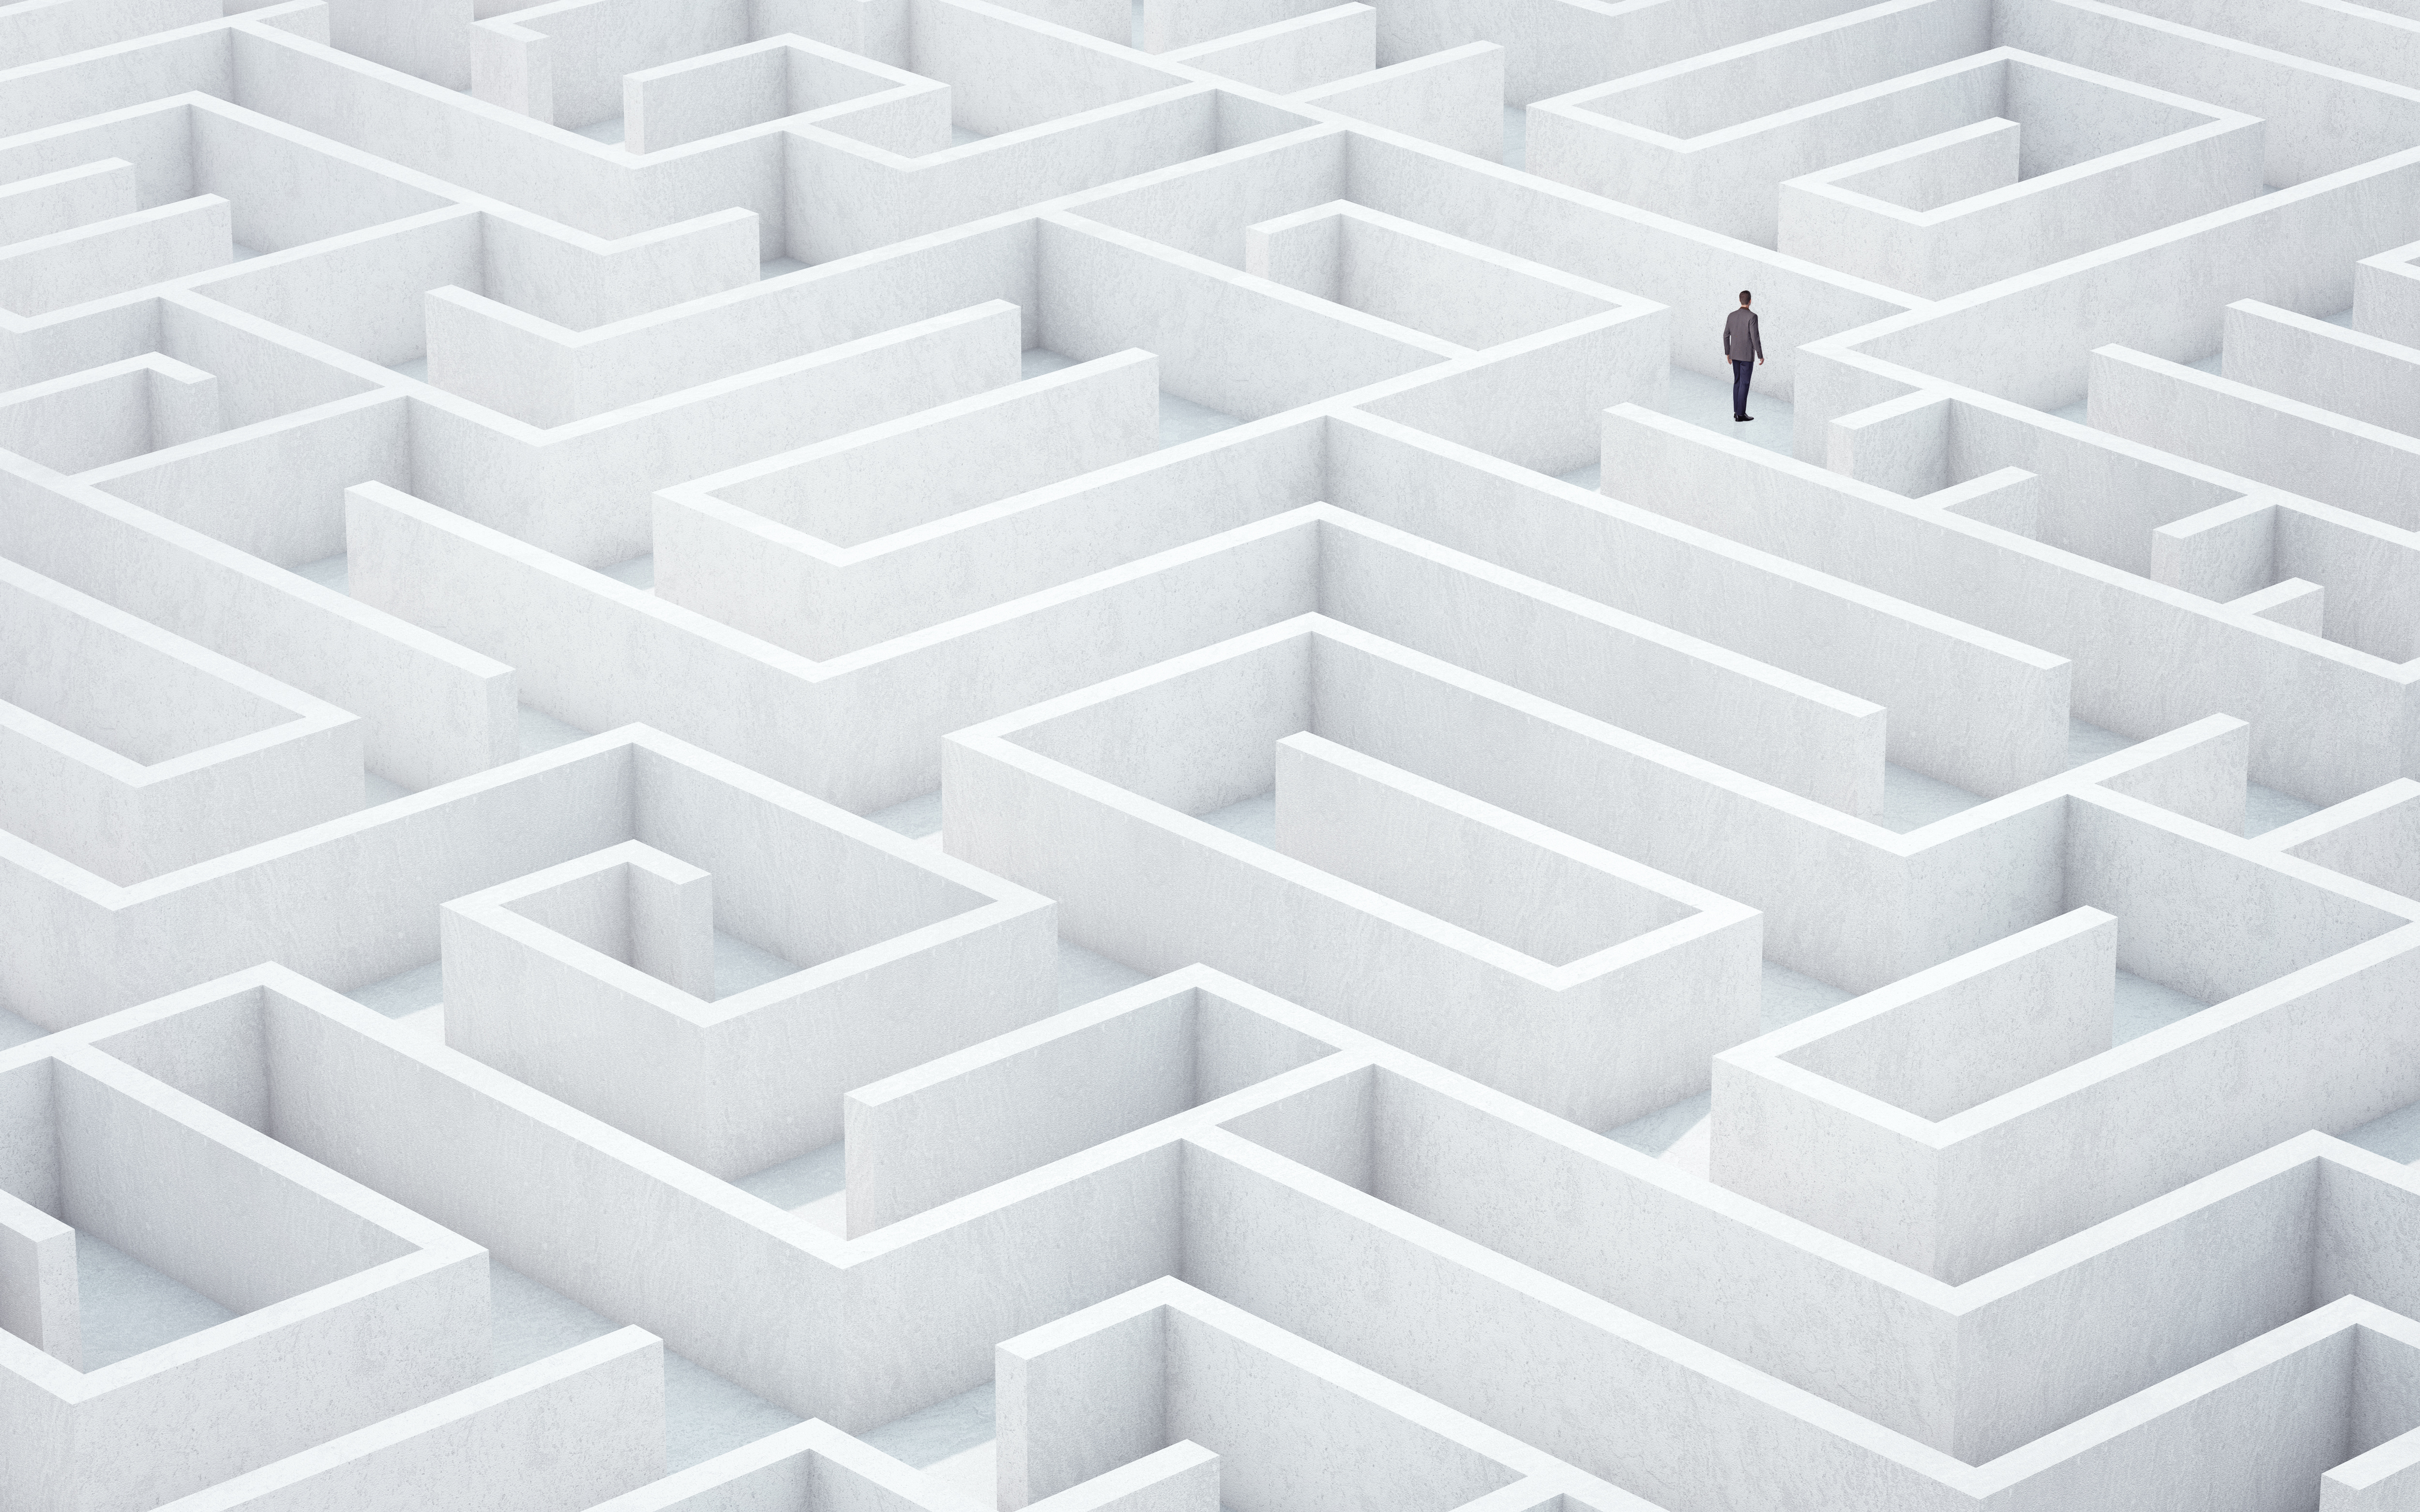 Person in a maze